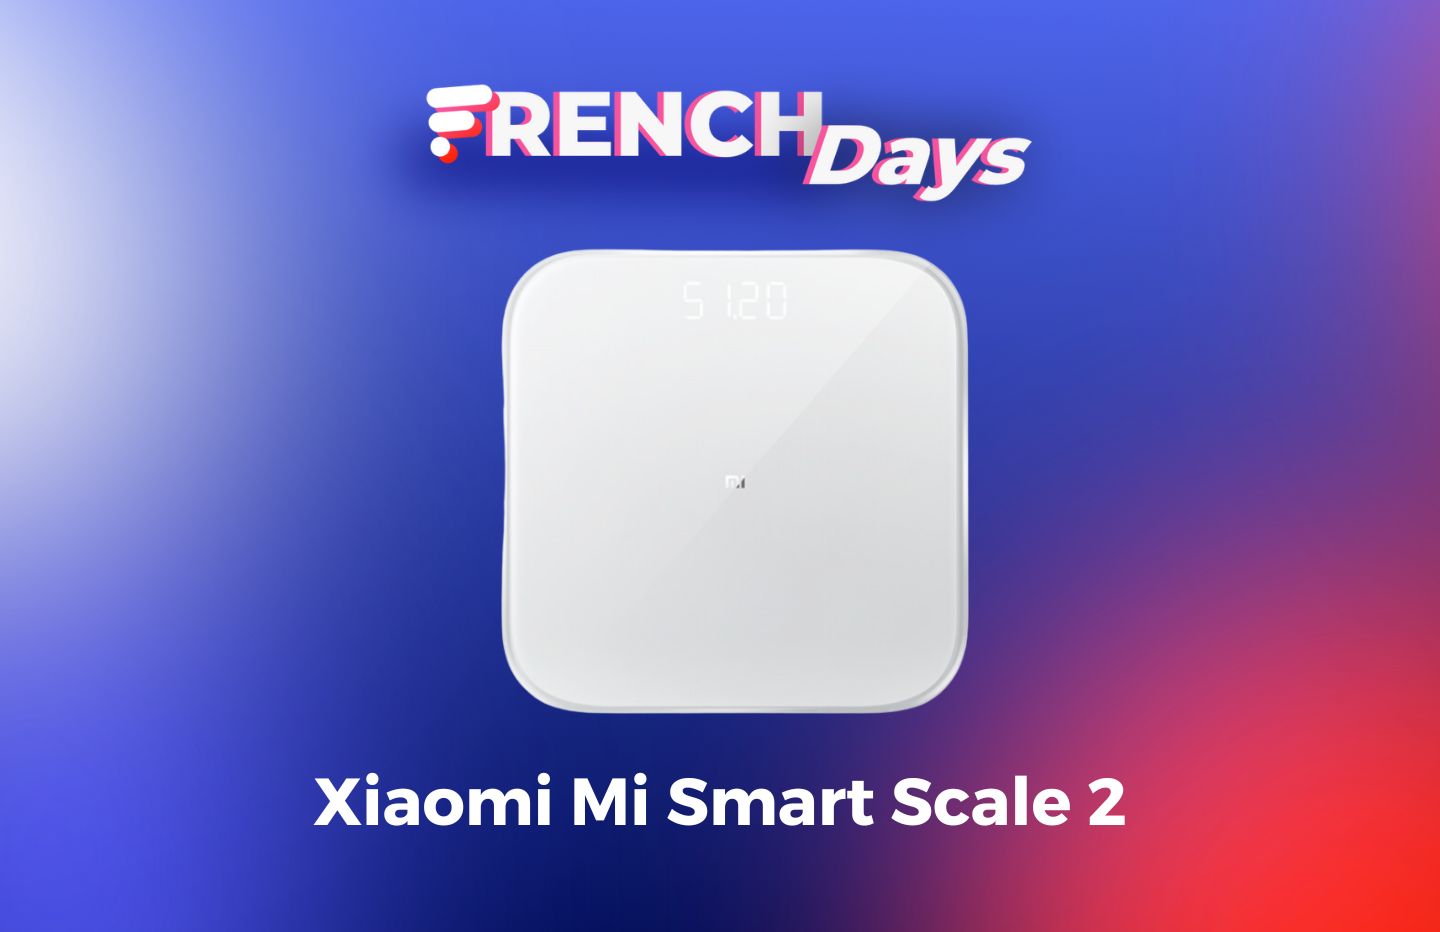 Balance connectée Xiaomi Version 2,Mi Body Composition Scale 2 à 14€99